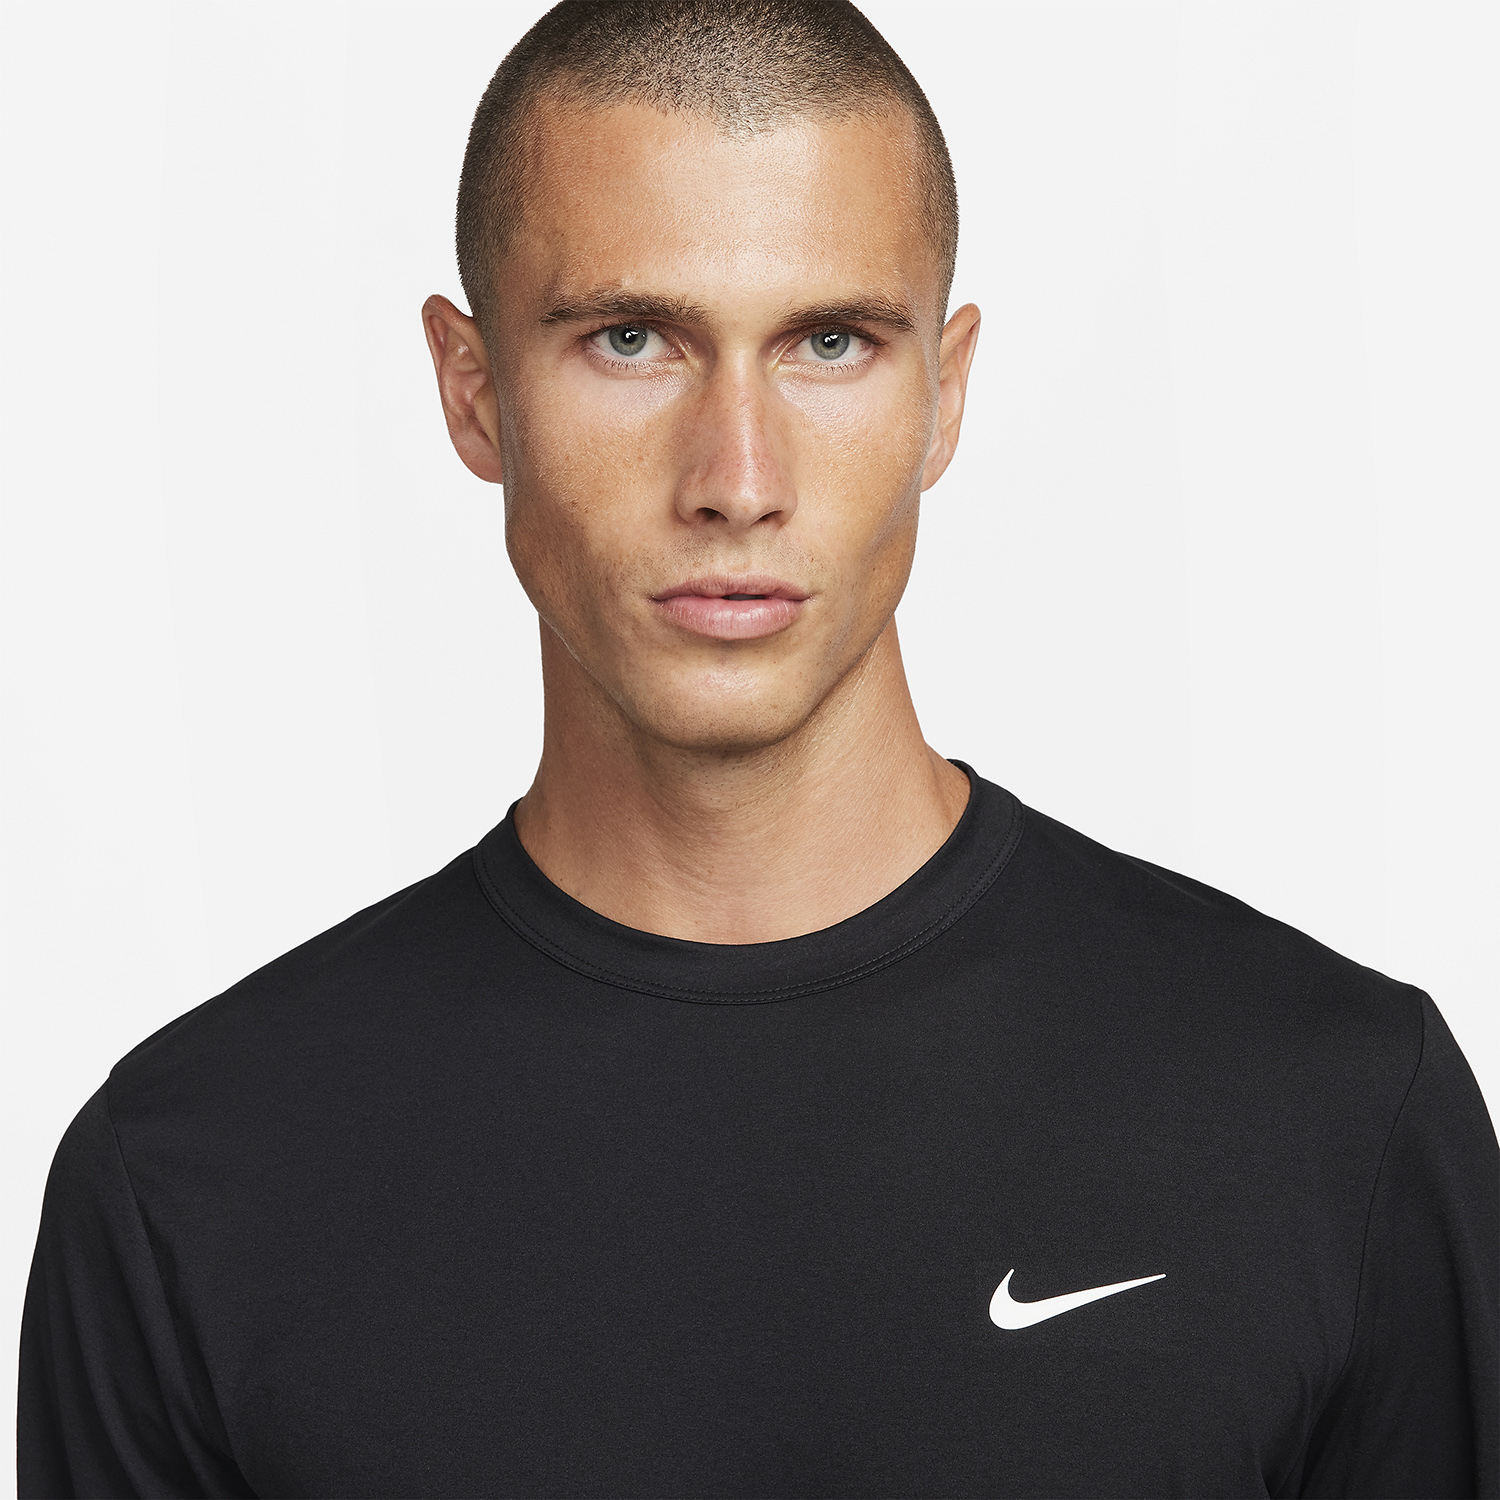 Nike Dri-FIT UV Hyverse Men's Training Shirt - Black/White